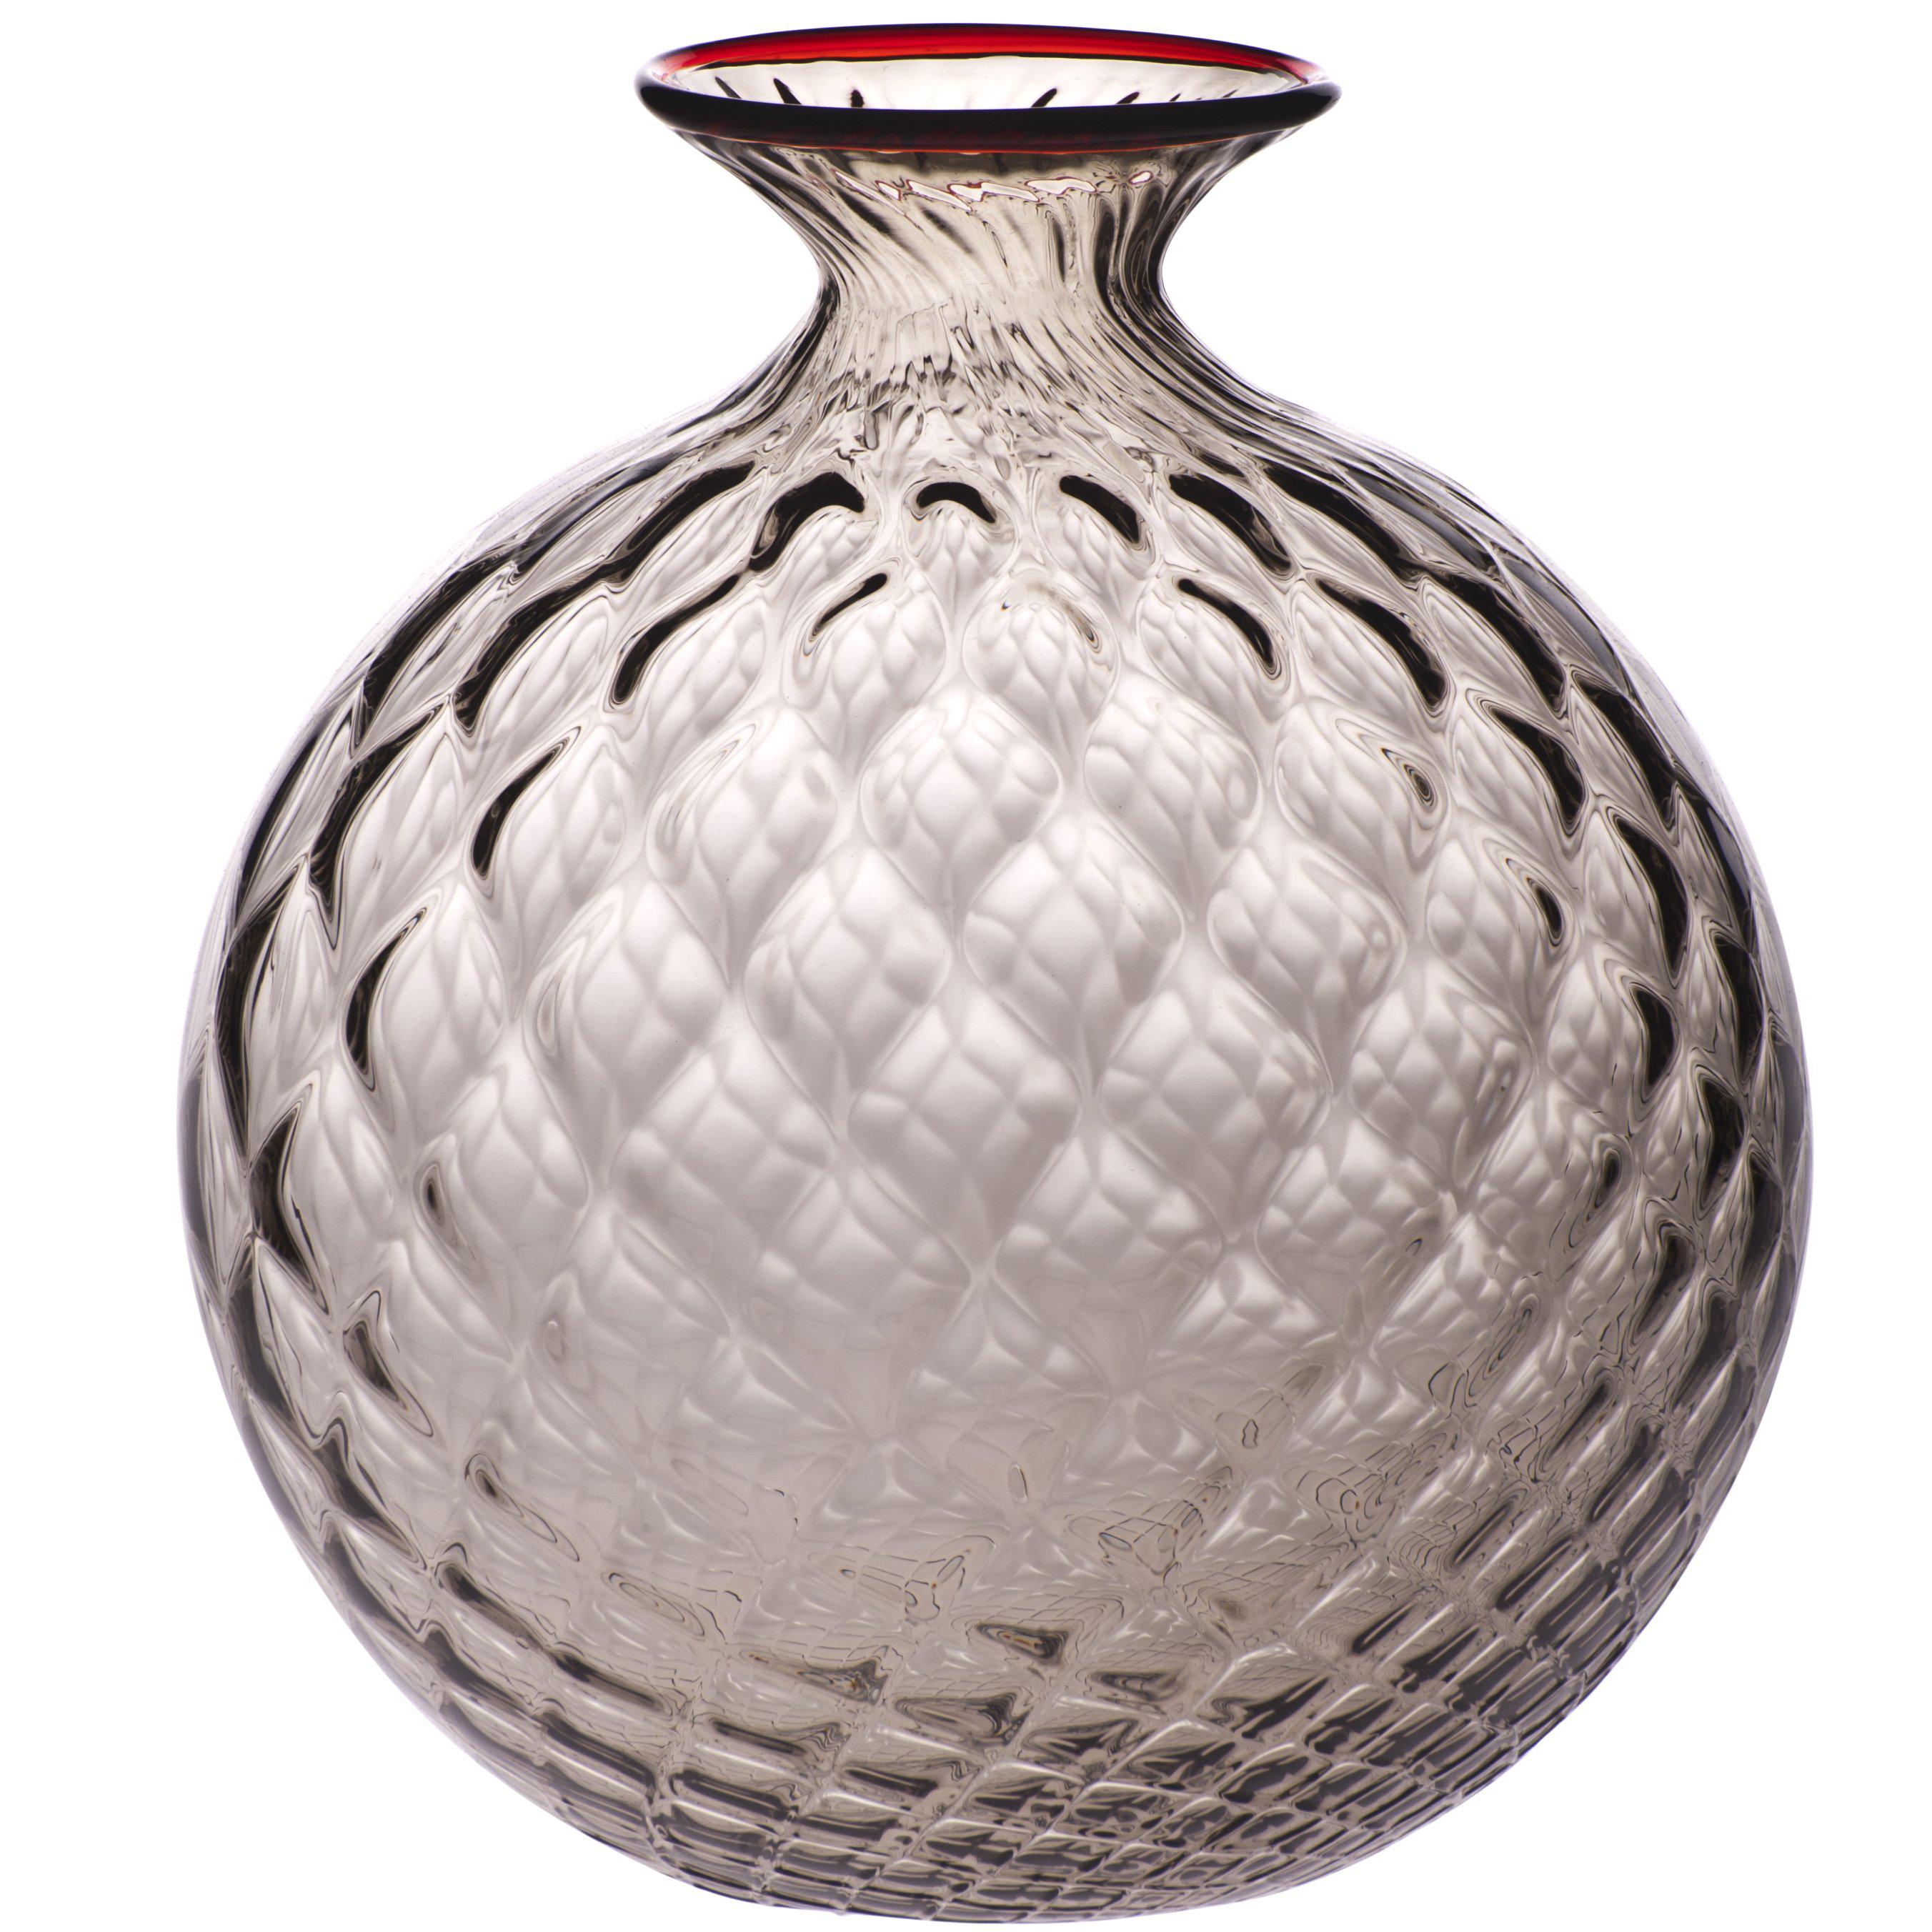 Monofiore Balloton Glass Vase in Grape with Red Thread Rim by Venini